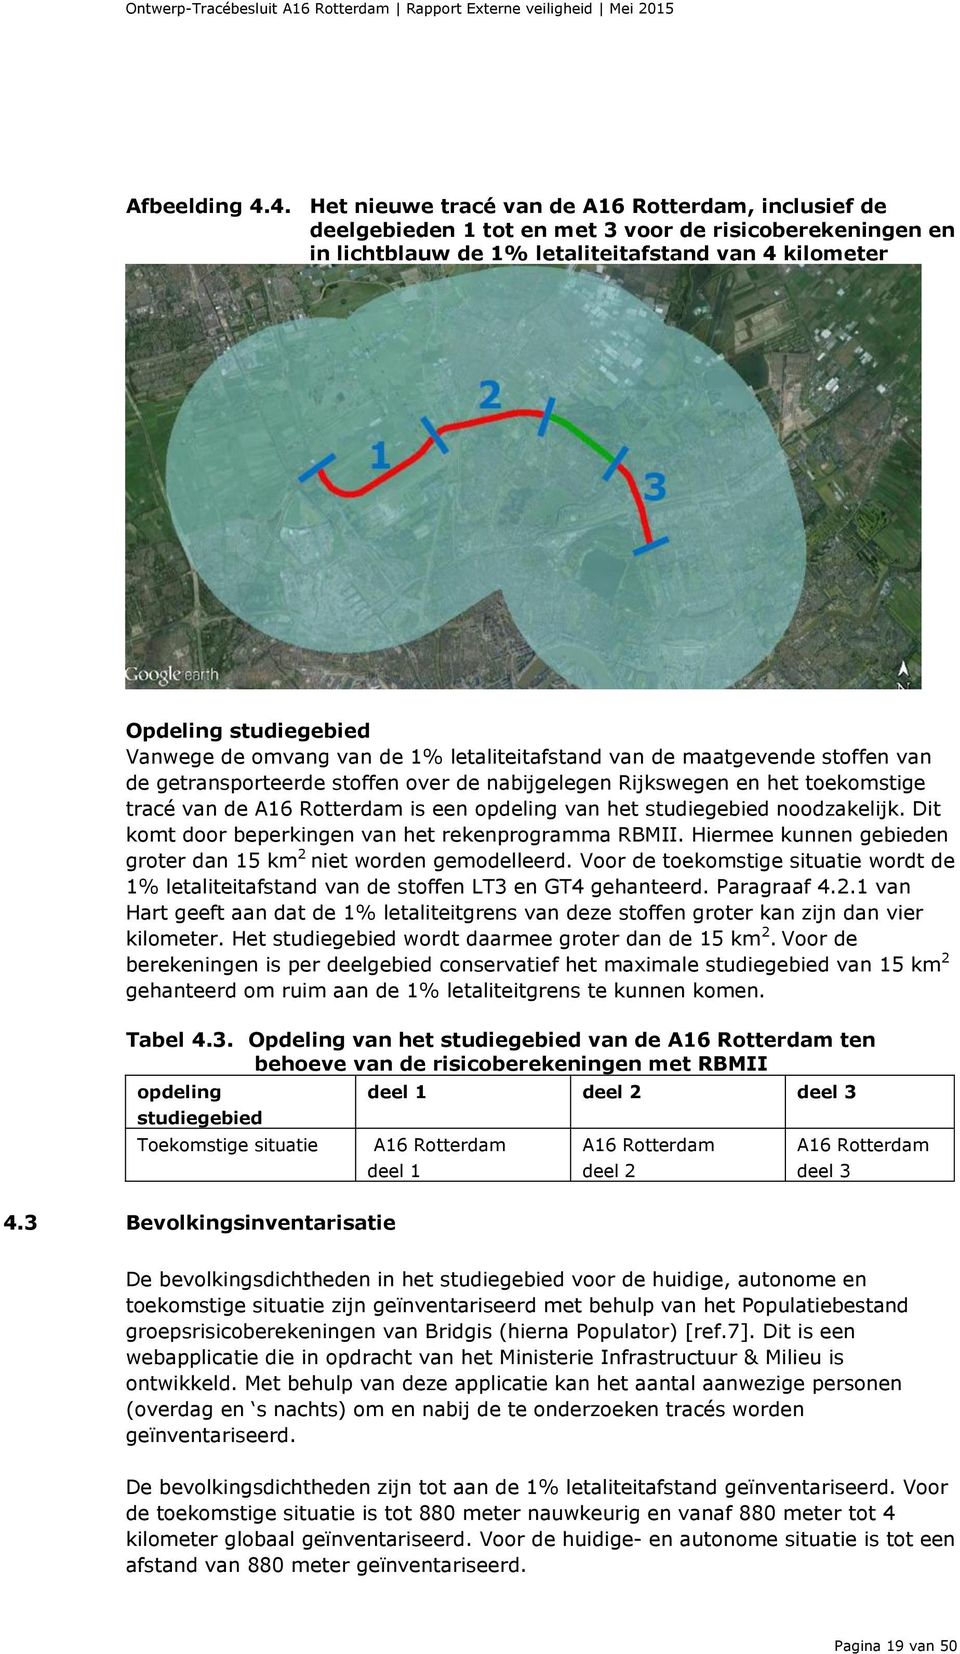 omvang van de 1% letaliteitafstand van de maatgevende stoffen van de getransporteerde stoffen over de nabijgelegen Rijkswegen en het toekomstige tracé van de A16 Rotterdam is een opdeling van het